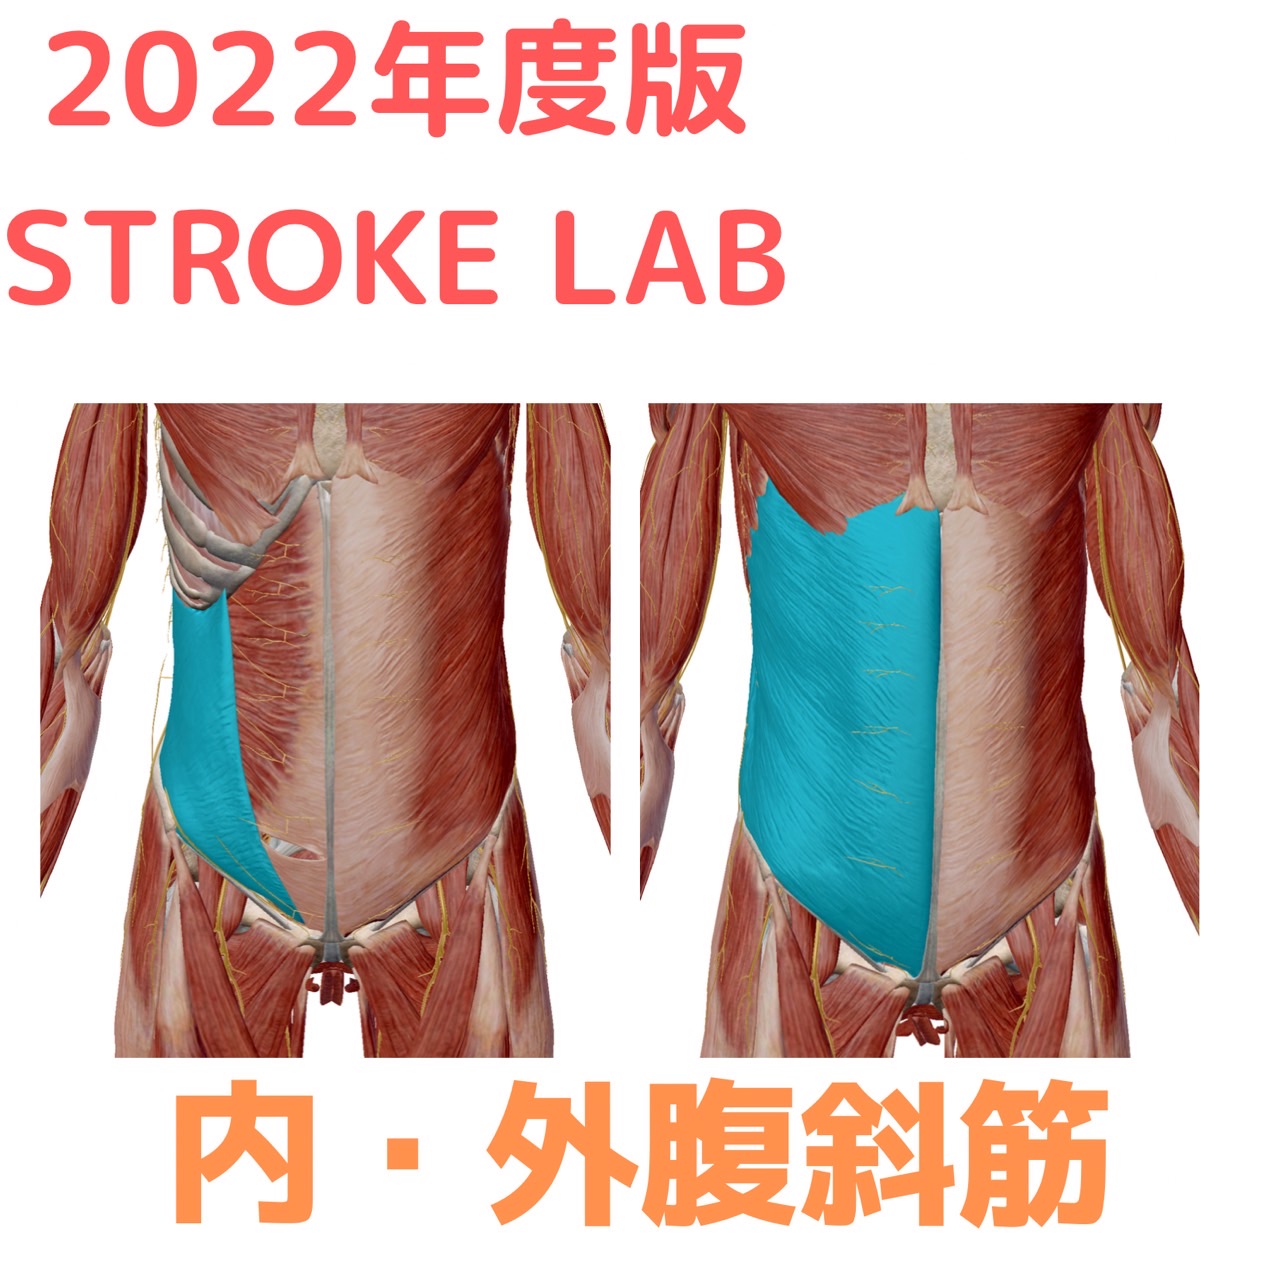 腹斜筋の起始停止 機能 作用作用 筋トレ エクササイズ 脳卒中 神経系 自費リハビリ施設 Stroke Lab 東京